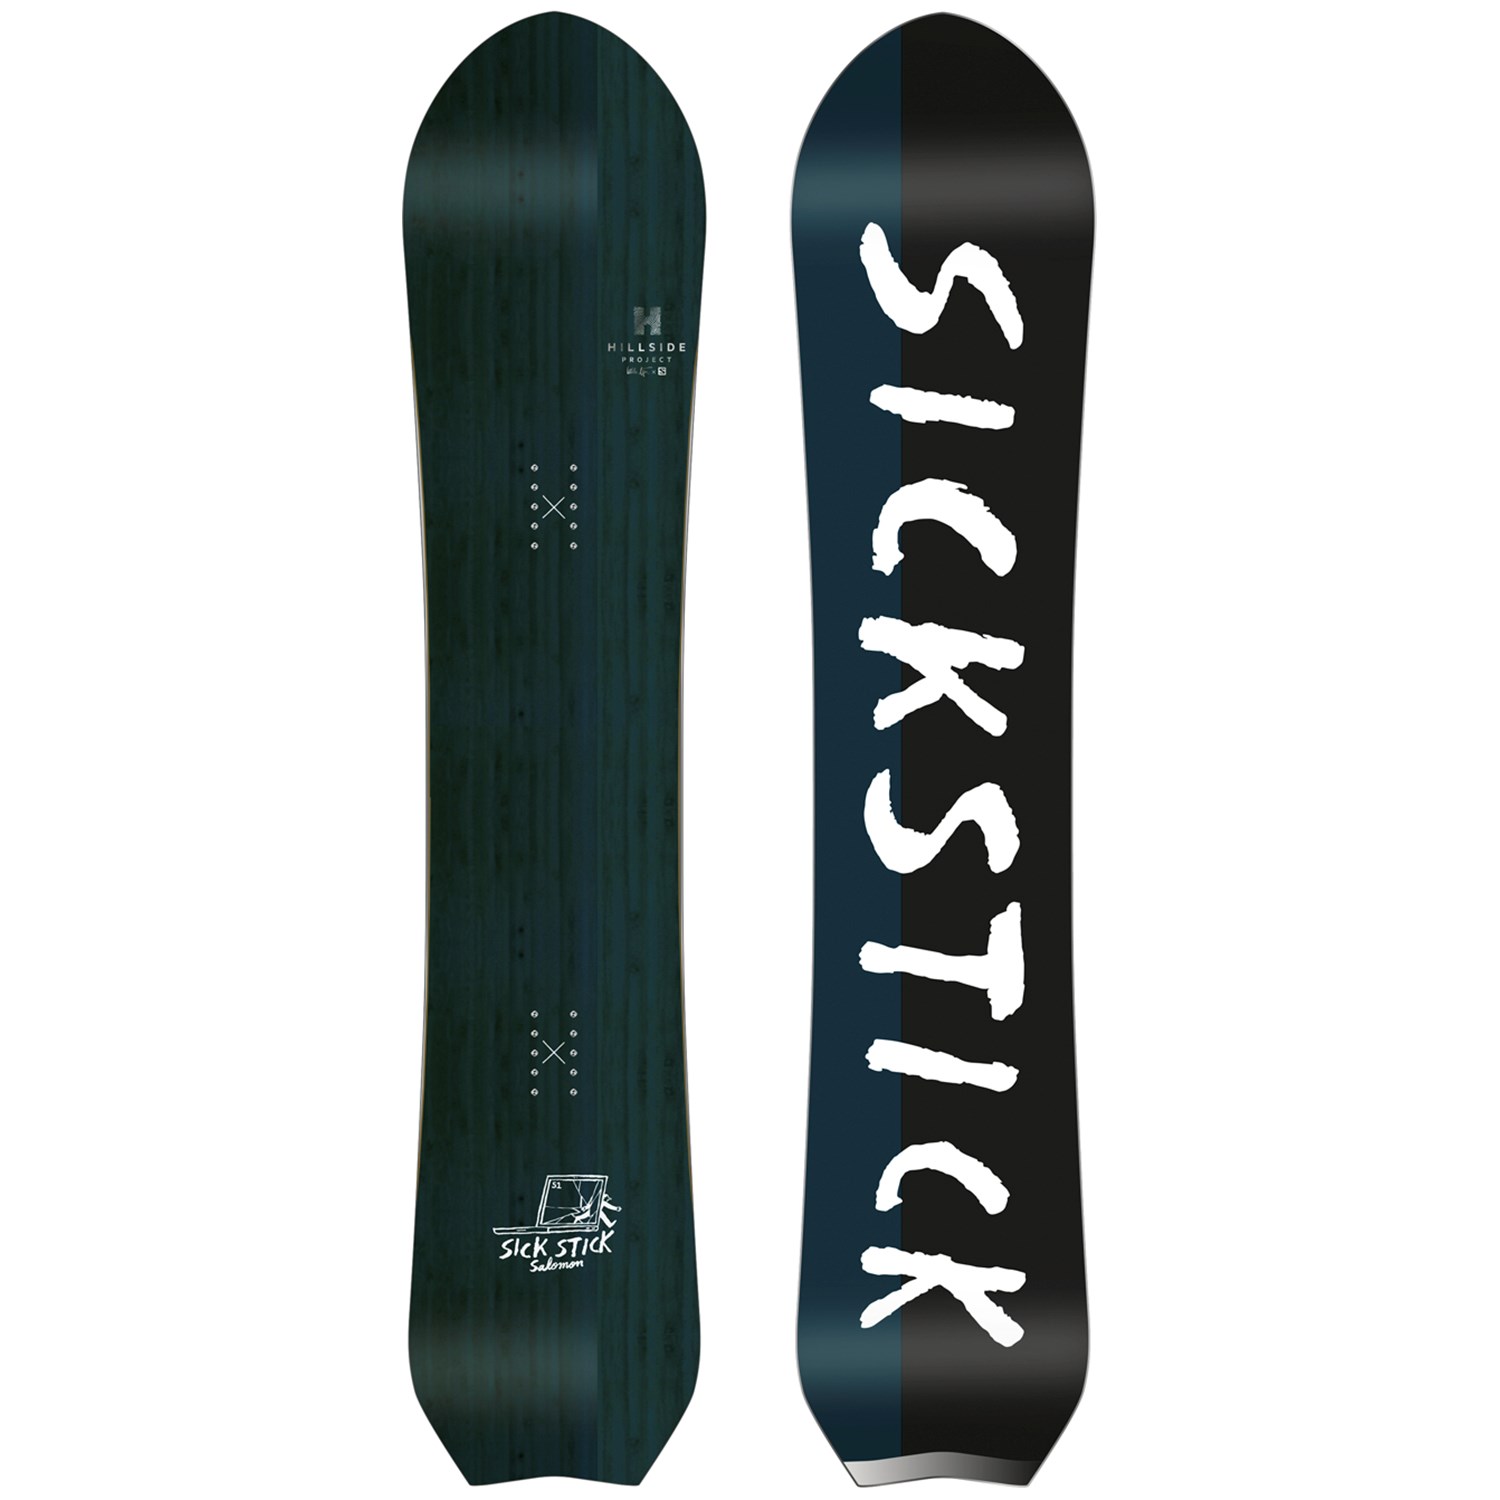 Salomon Sickstick Snowboard 2018 evo